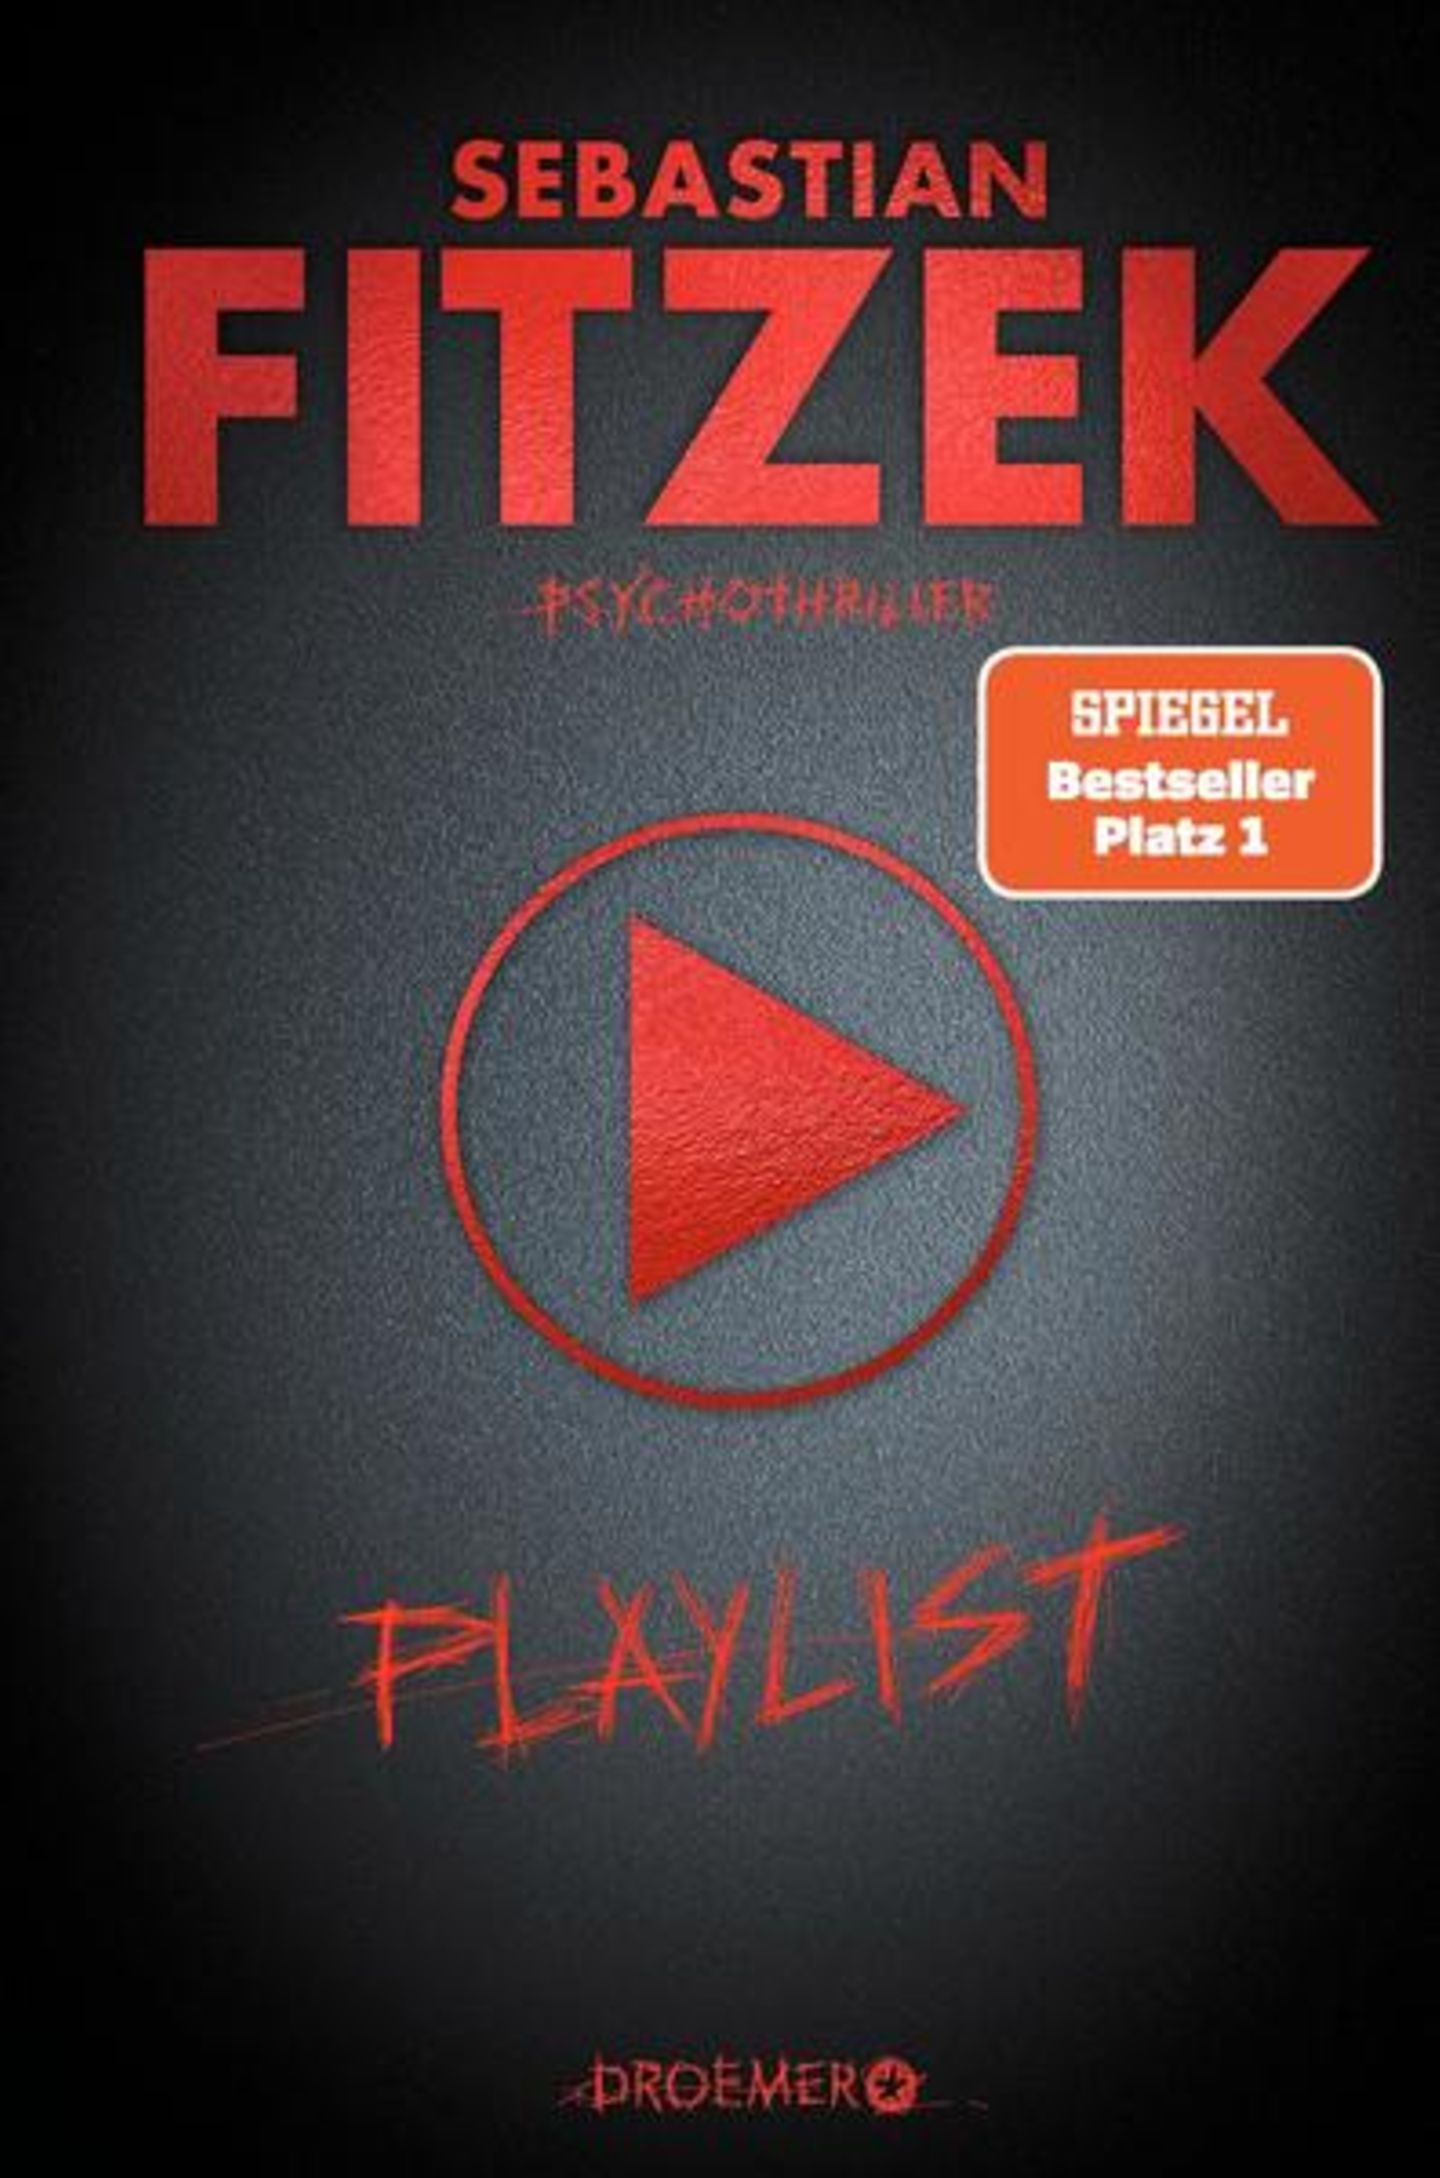 Buch-Charts: Platz 4: Sebastian Fitzek "Playlist"